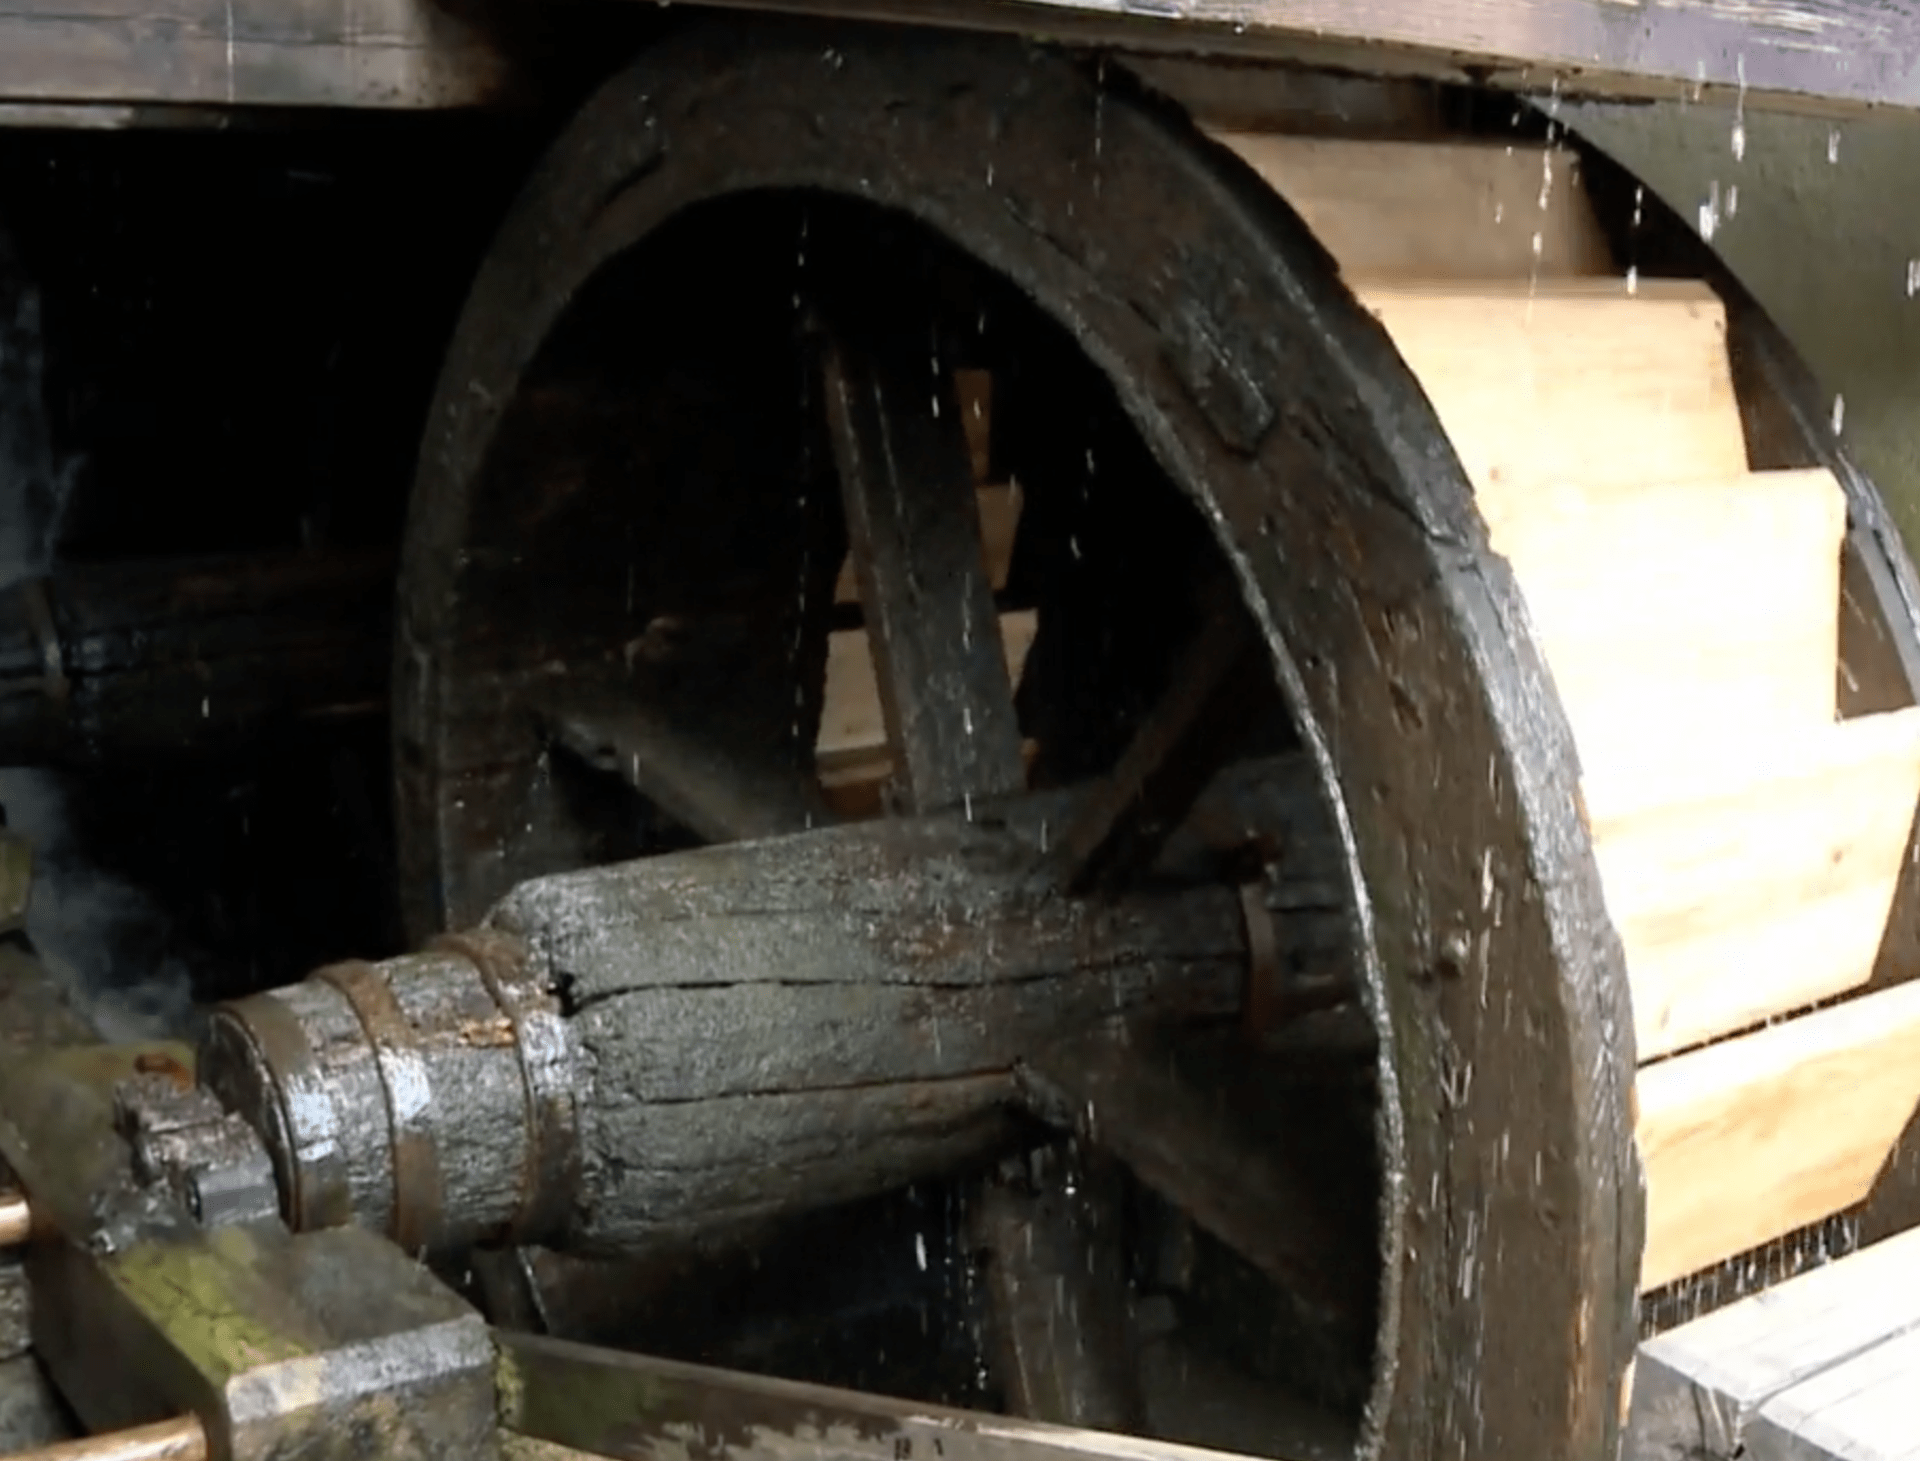 Kovářské kladivo pohání mlýnské kolo.